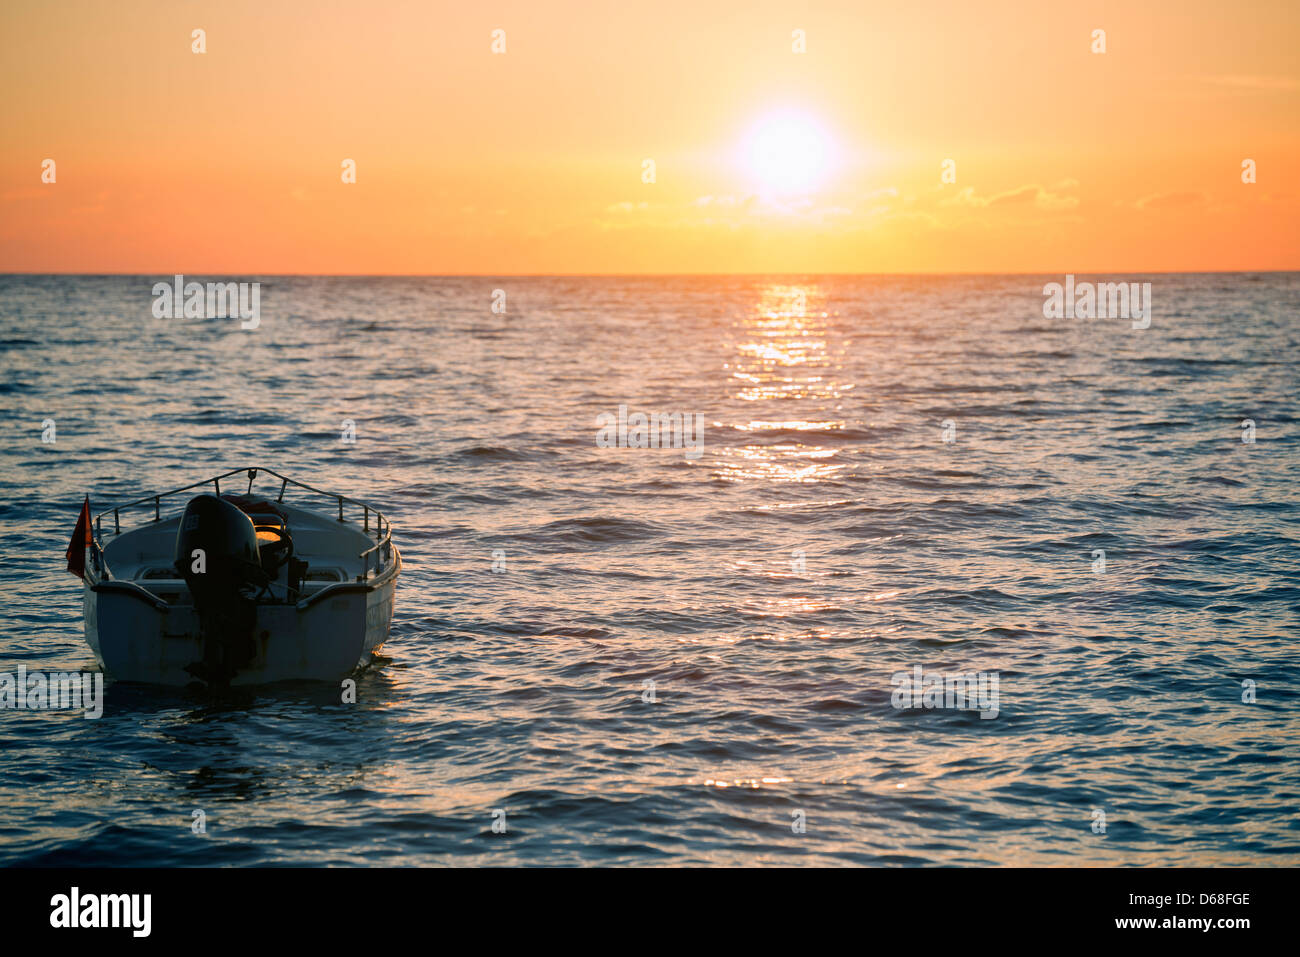 Europe, Albania, Mediterranean Sea, Dhermi, sunset Stock Photo